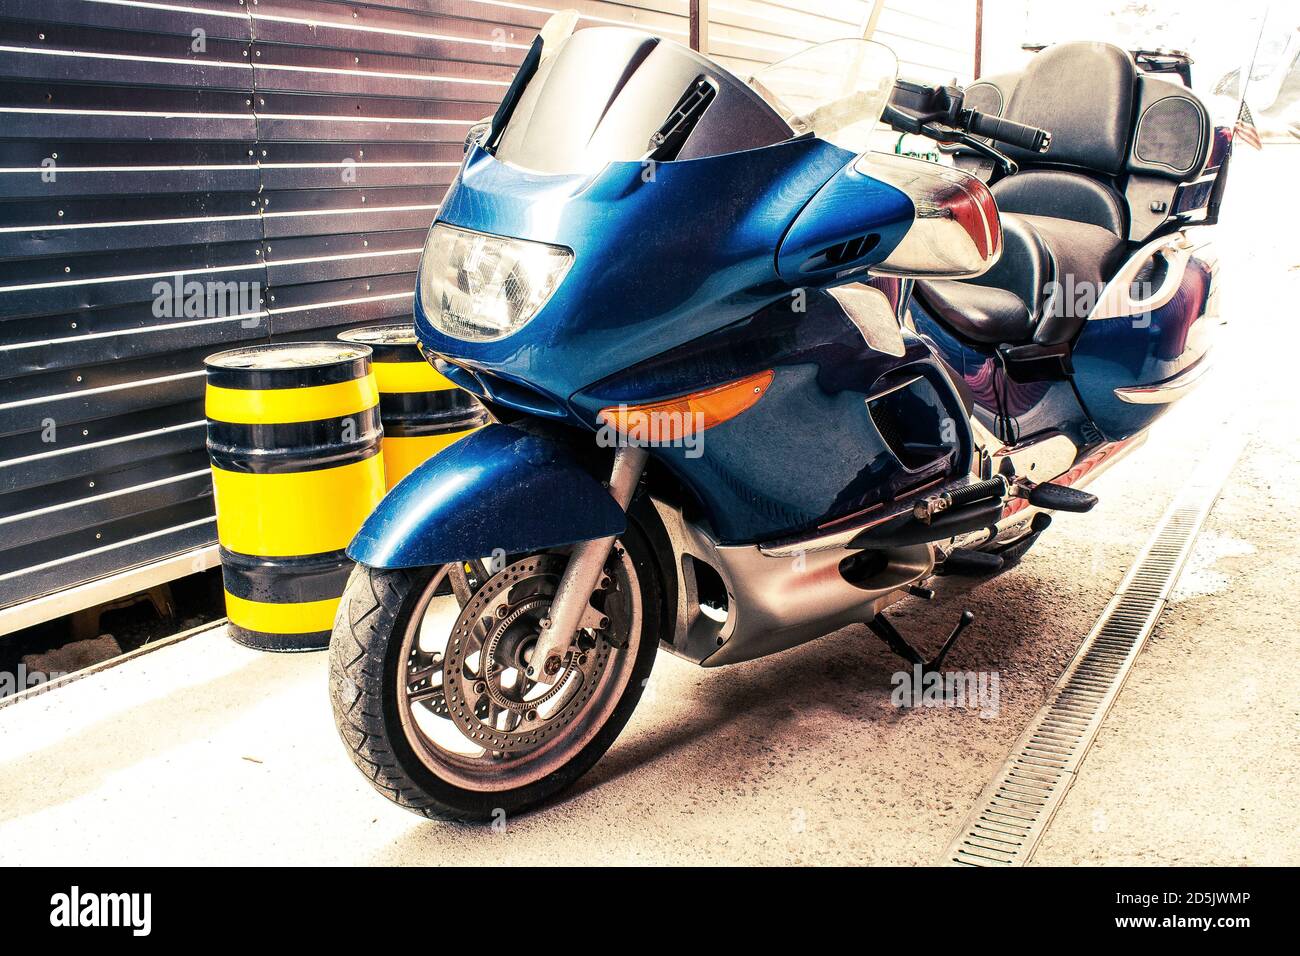 Schönes großes blaues Rennrad mit großen Spiegeln in einer Garage mit schwarz-gelben Ölfässern. Kreuzfahrt Motorrad mit bequemen Rücksitz mit Kleiderschrank t Stockfoto